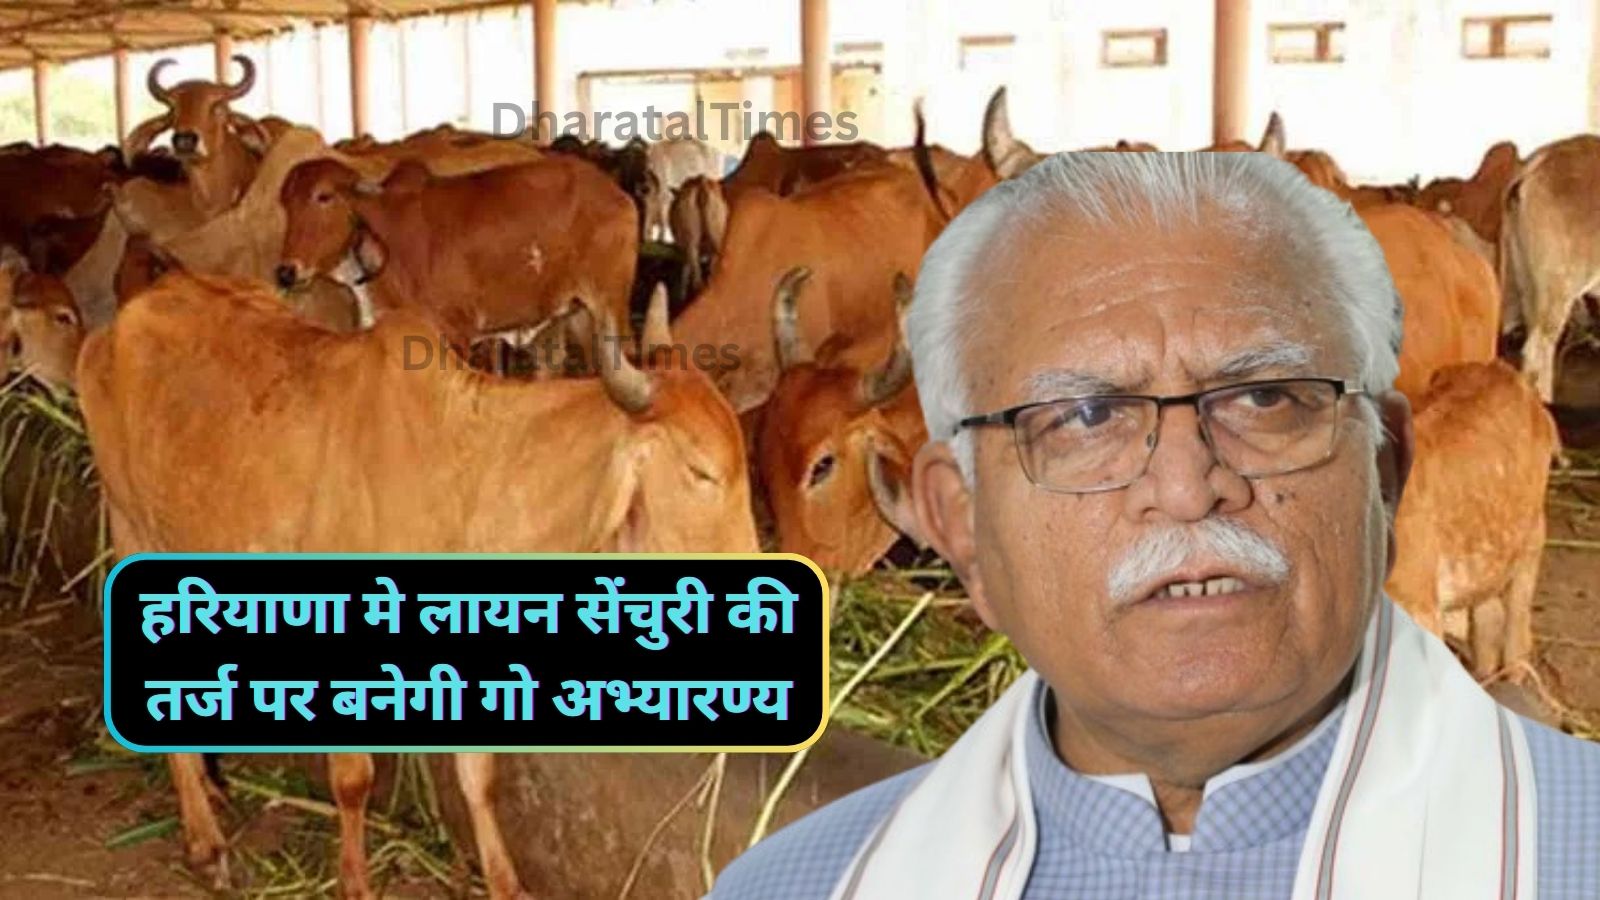 Cow Abhyaran Haryana:हरियाणा मे लायन सेंचुरी की तर्ज पर बनेगी गो अभ्यारण्य,सरकार ने दिया प्रस्ताव